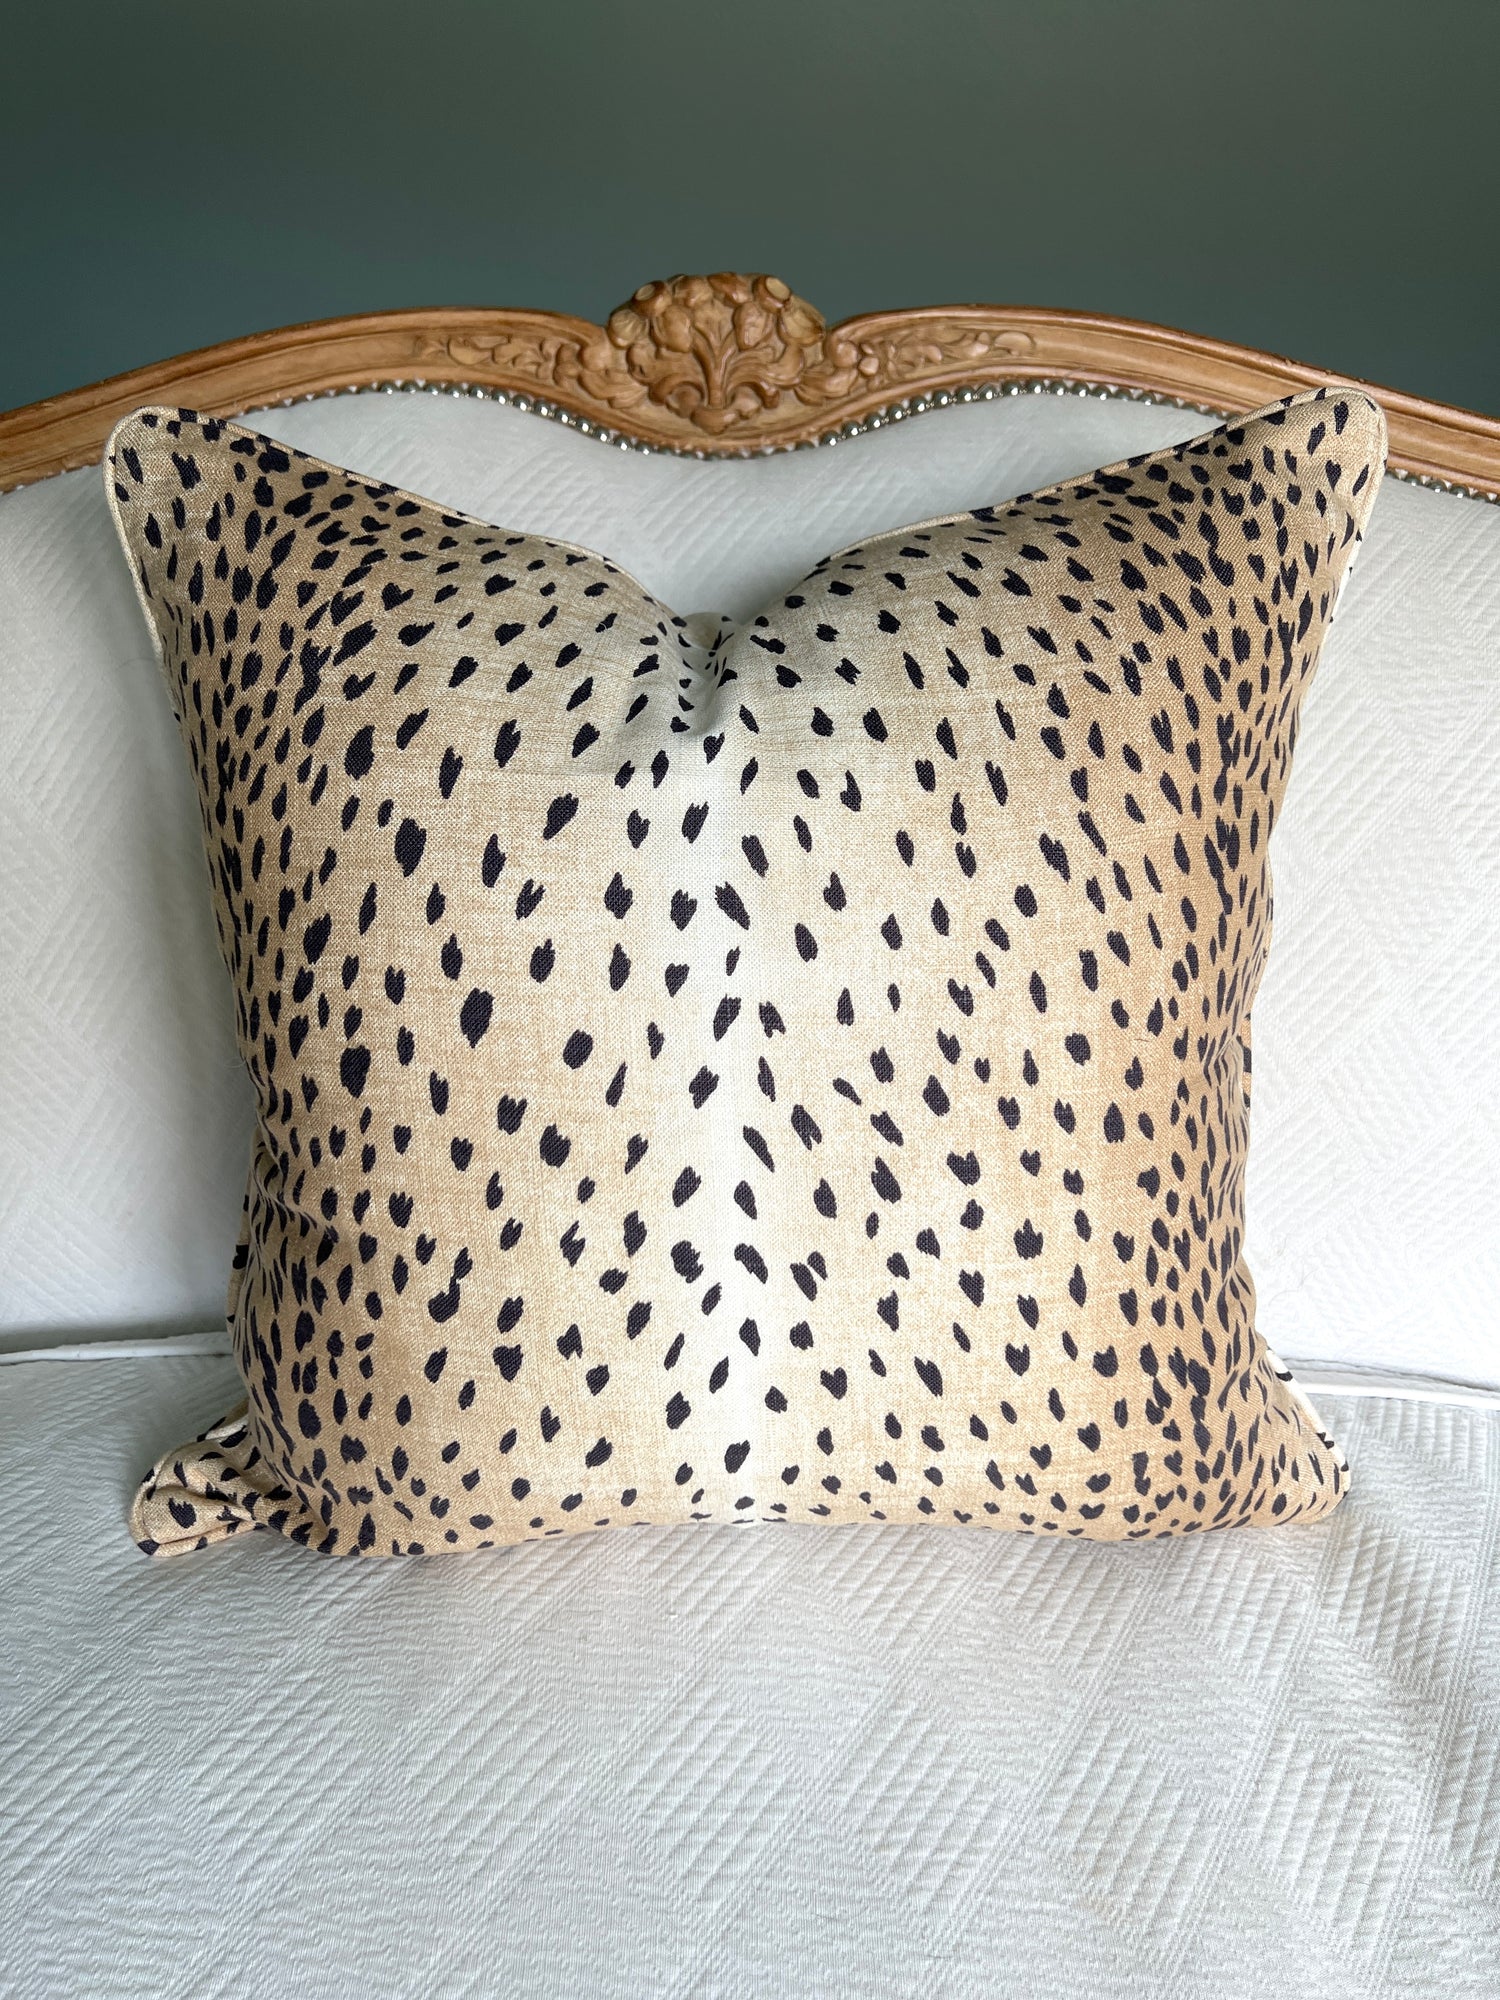 chanel logo pillows decorative throw pillows